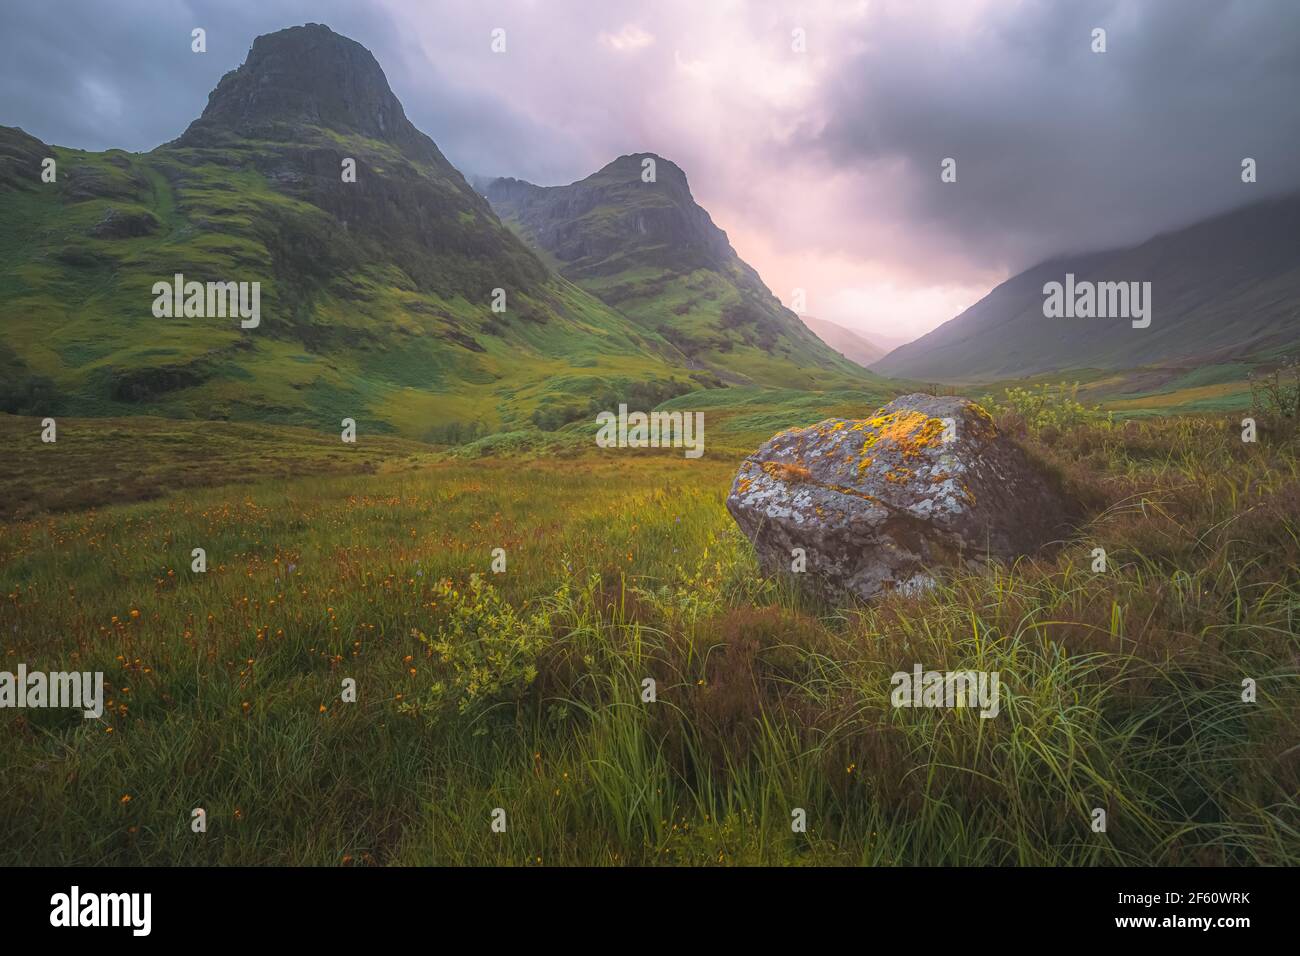 Paisaje de montaña de las exuberantes y verdes tres Hermanas de Glencoe durante una puesta de sol en verano o un amanecer en las tierras altas de Escocia, Scotlan Foto de stock